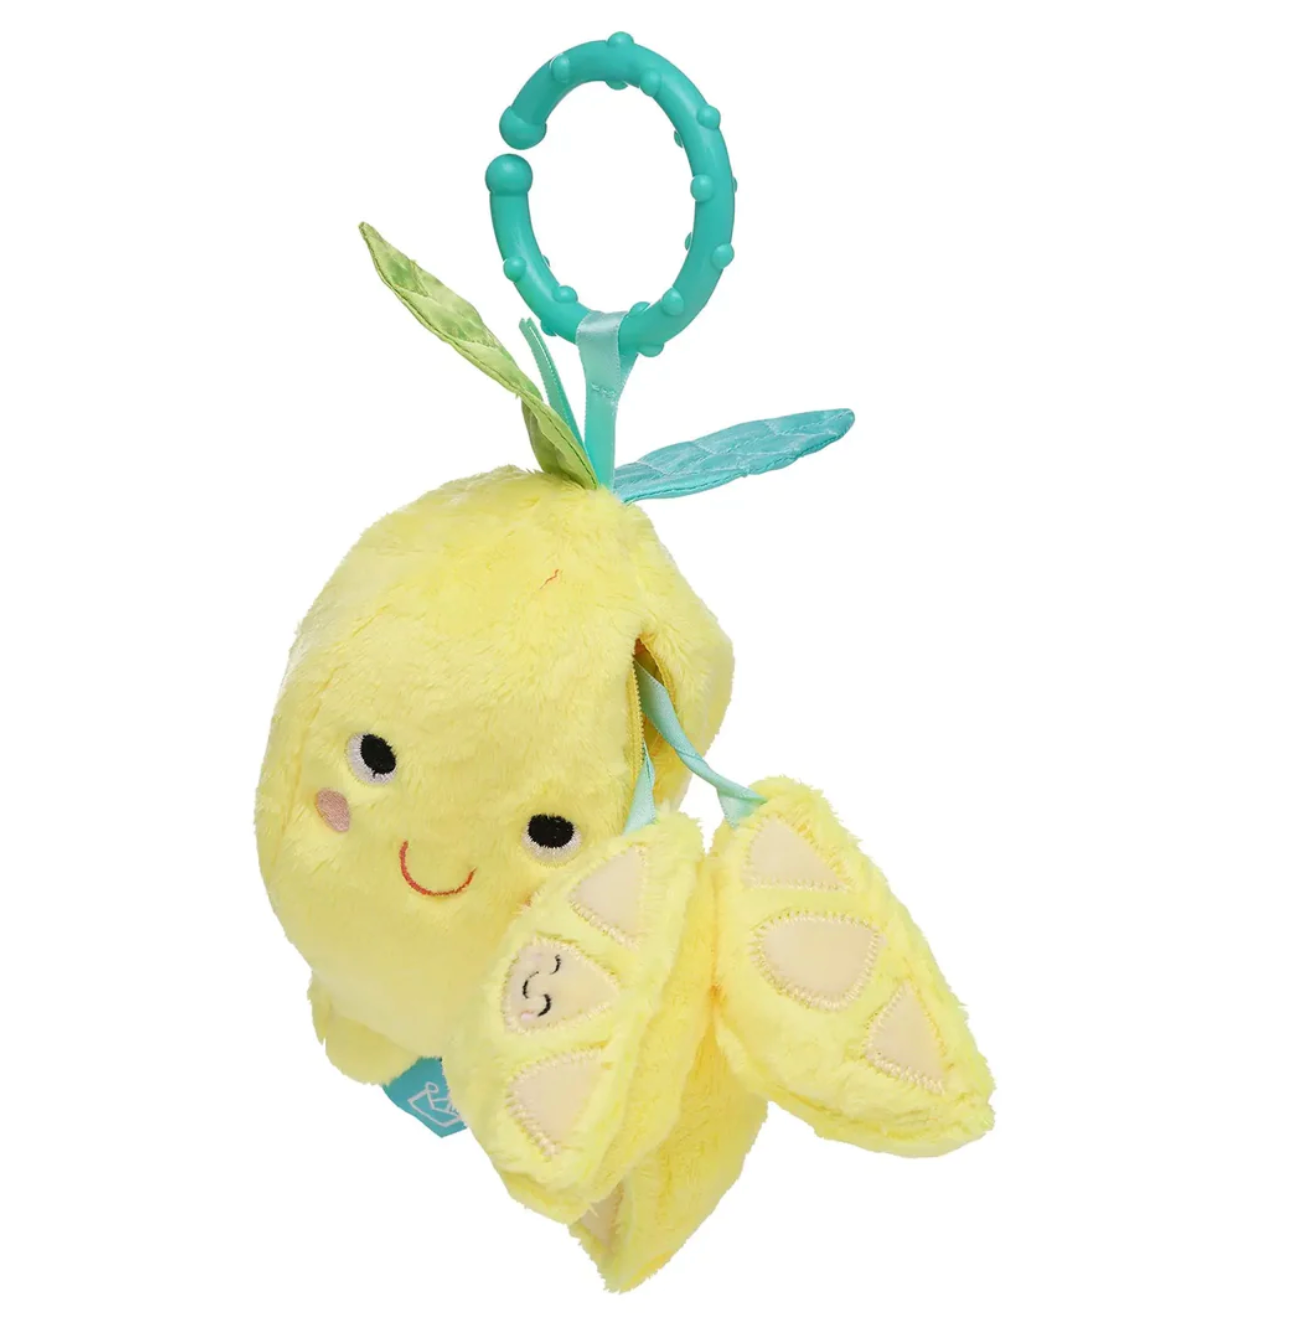 Lemon Take-Along Toy - Magpies Paducah